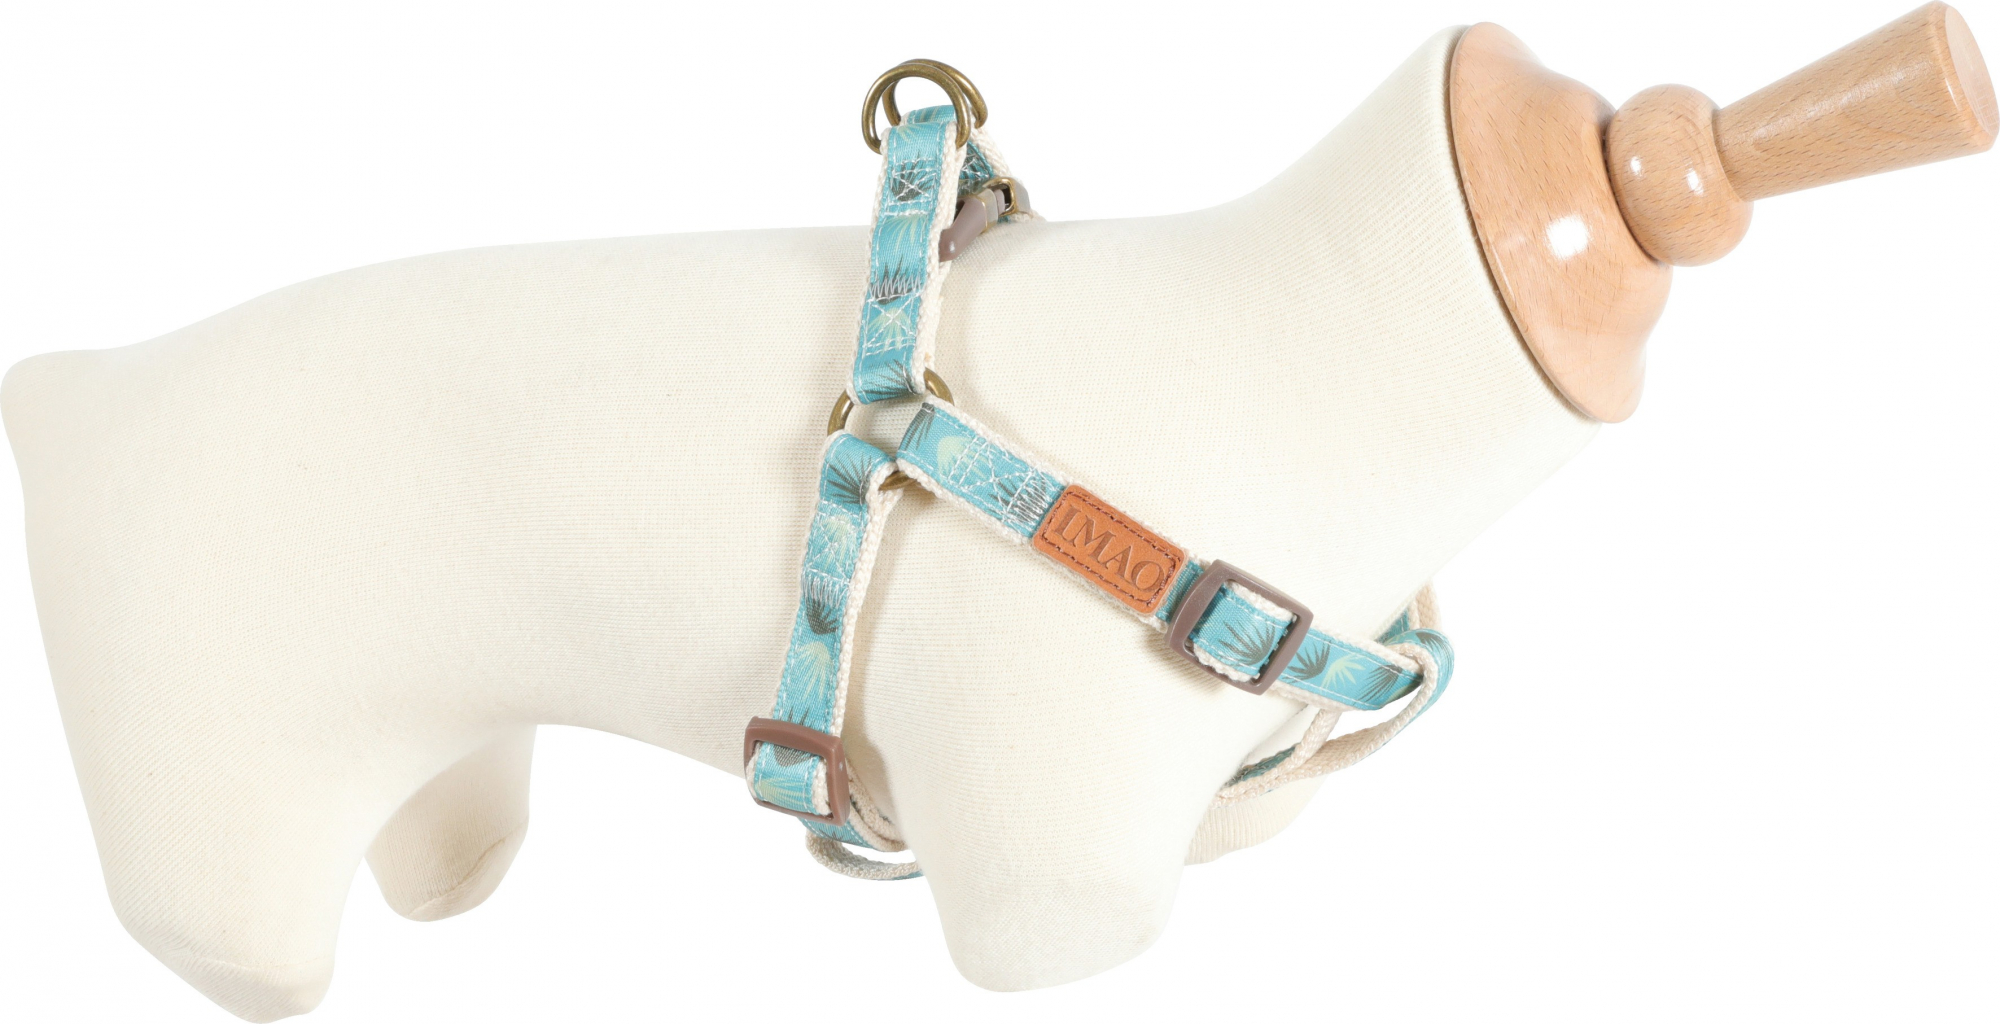 Imao Taiga verstellbares Hundegeschirr -mehrere Farben - mehrere Größen